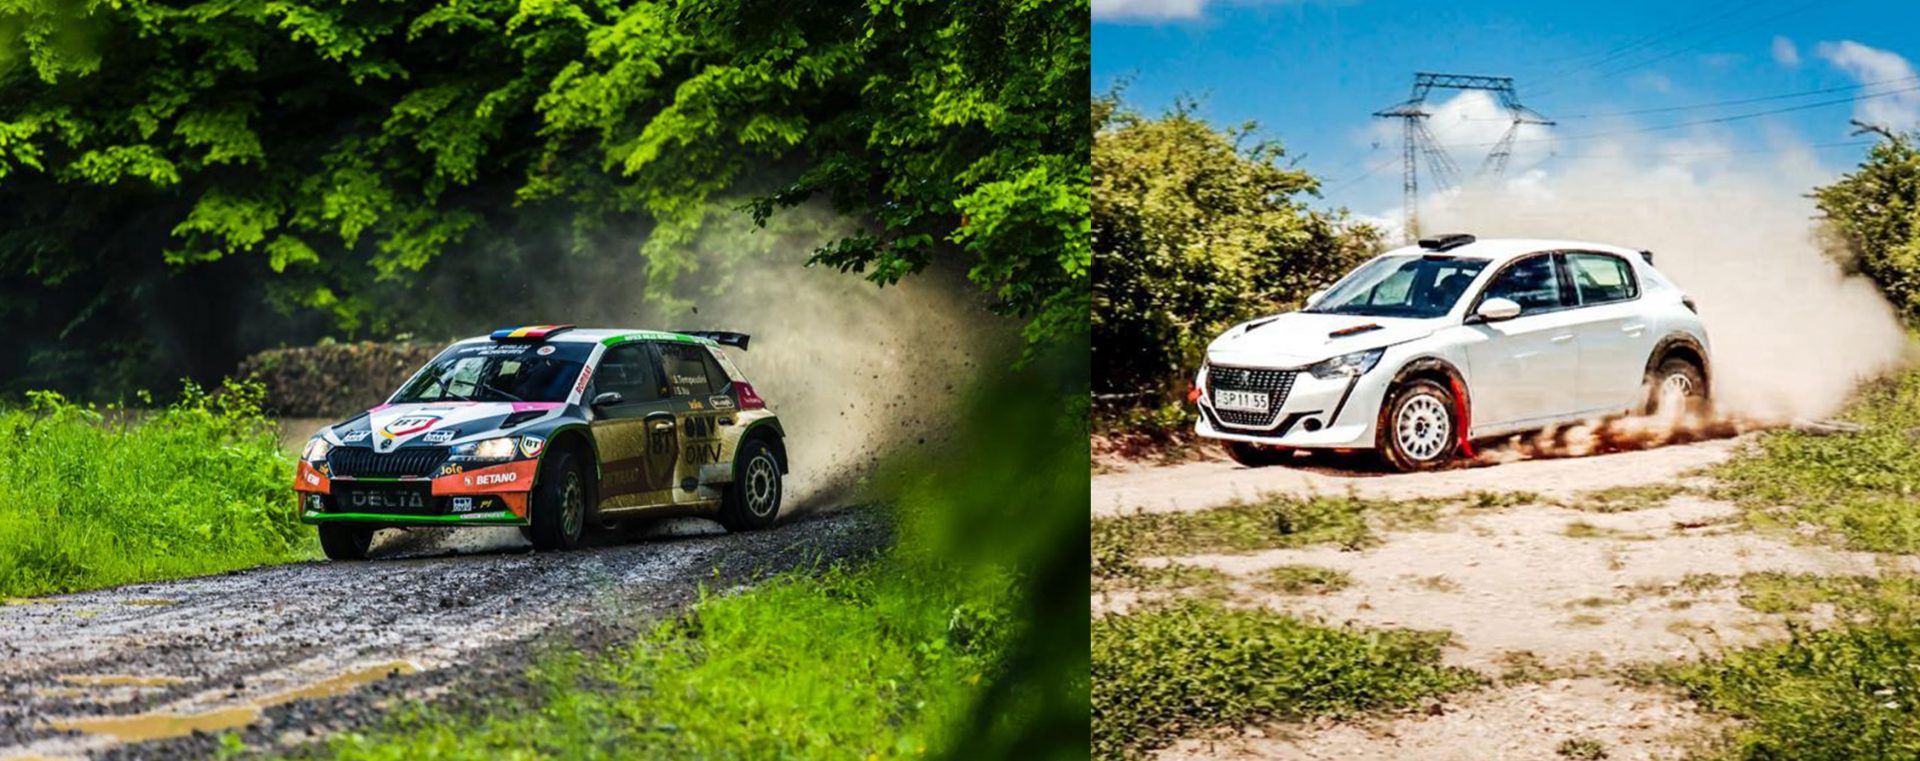 Napoca Rally Academy începe sezonul în Campionatul European de Raliuri. Simone Tempestini și Norbert Maior reprezintă România la Raliul Poloniei